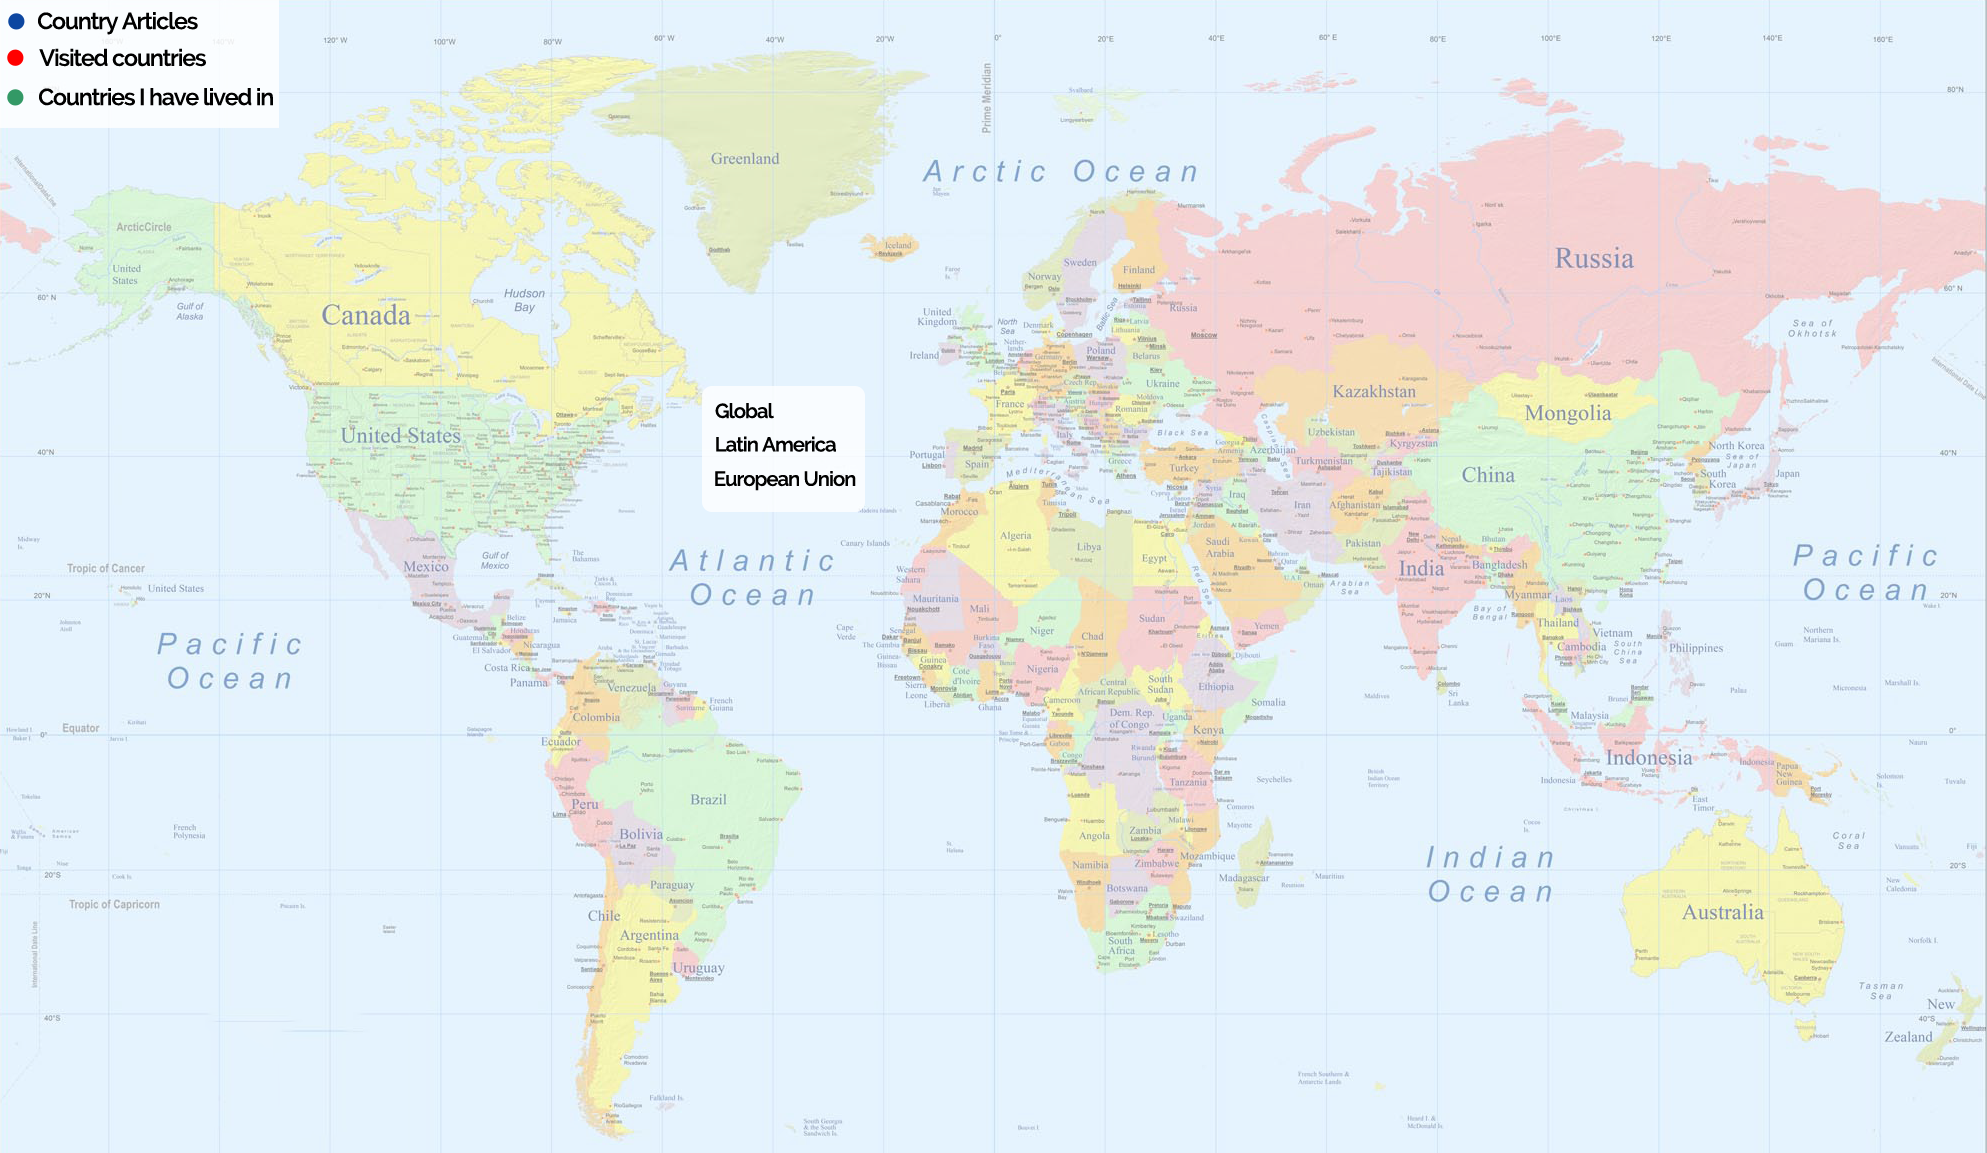 Mapamundi político con países en español: ¿Cuál es el más buscado